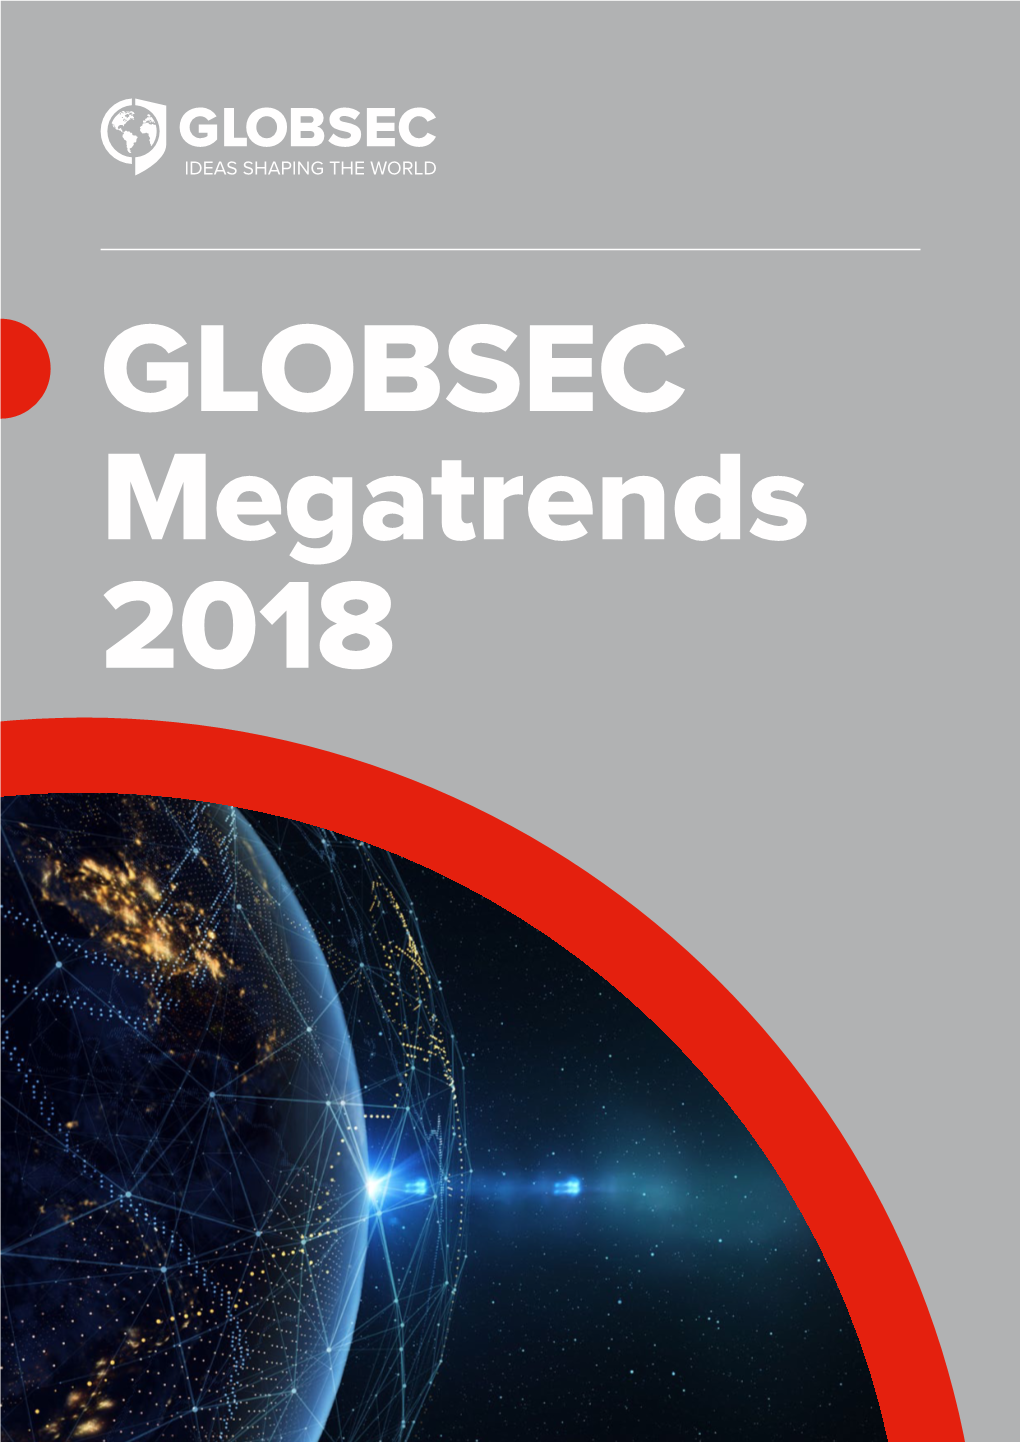 GLOBSEC Megatrends 2018 02 GLOBSEC Megatrends 2018 GLOBSEC Megatrends 2018 03